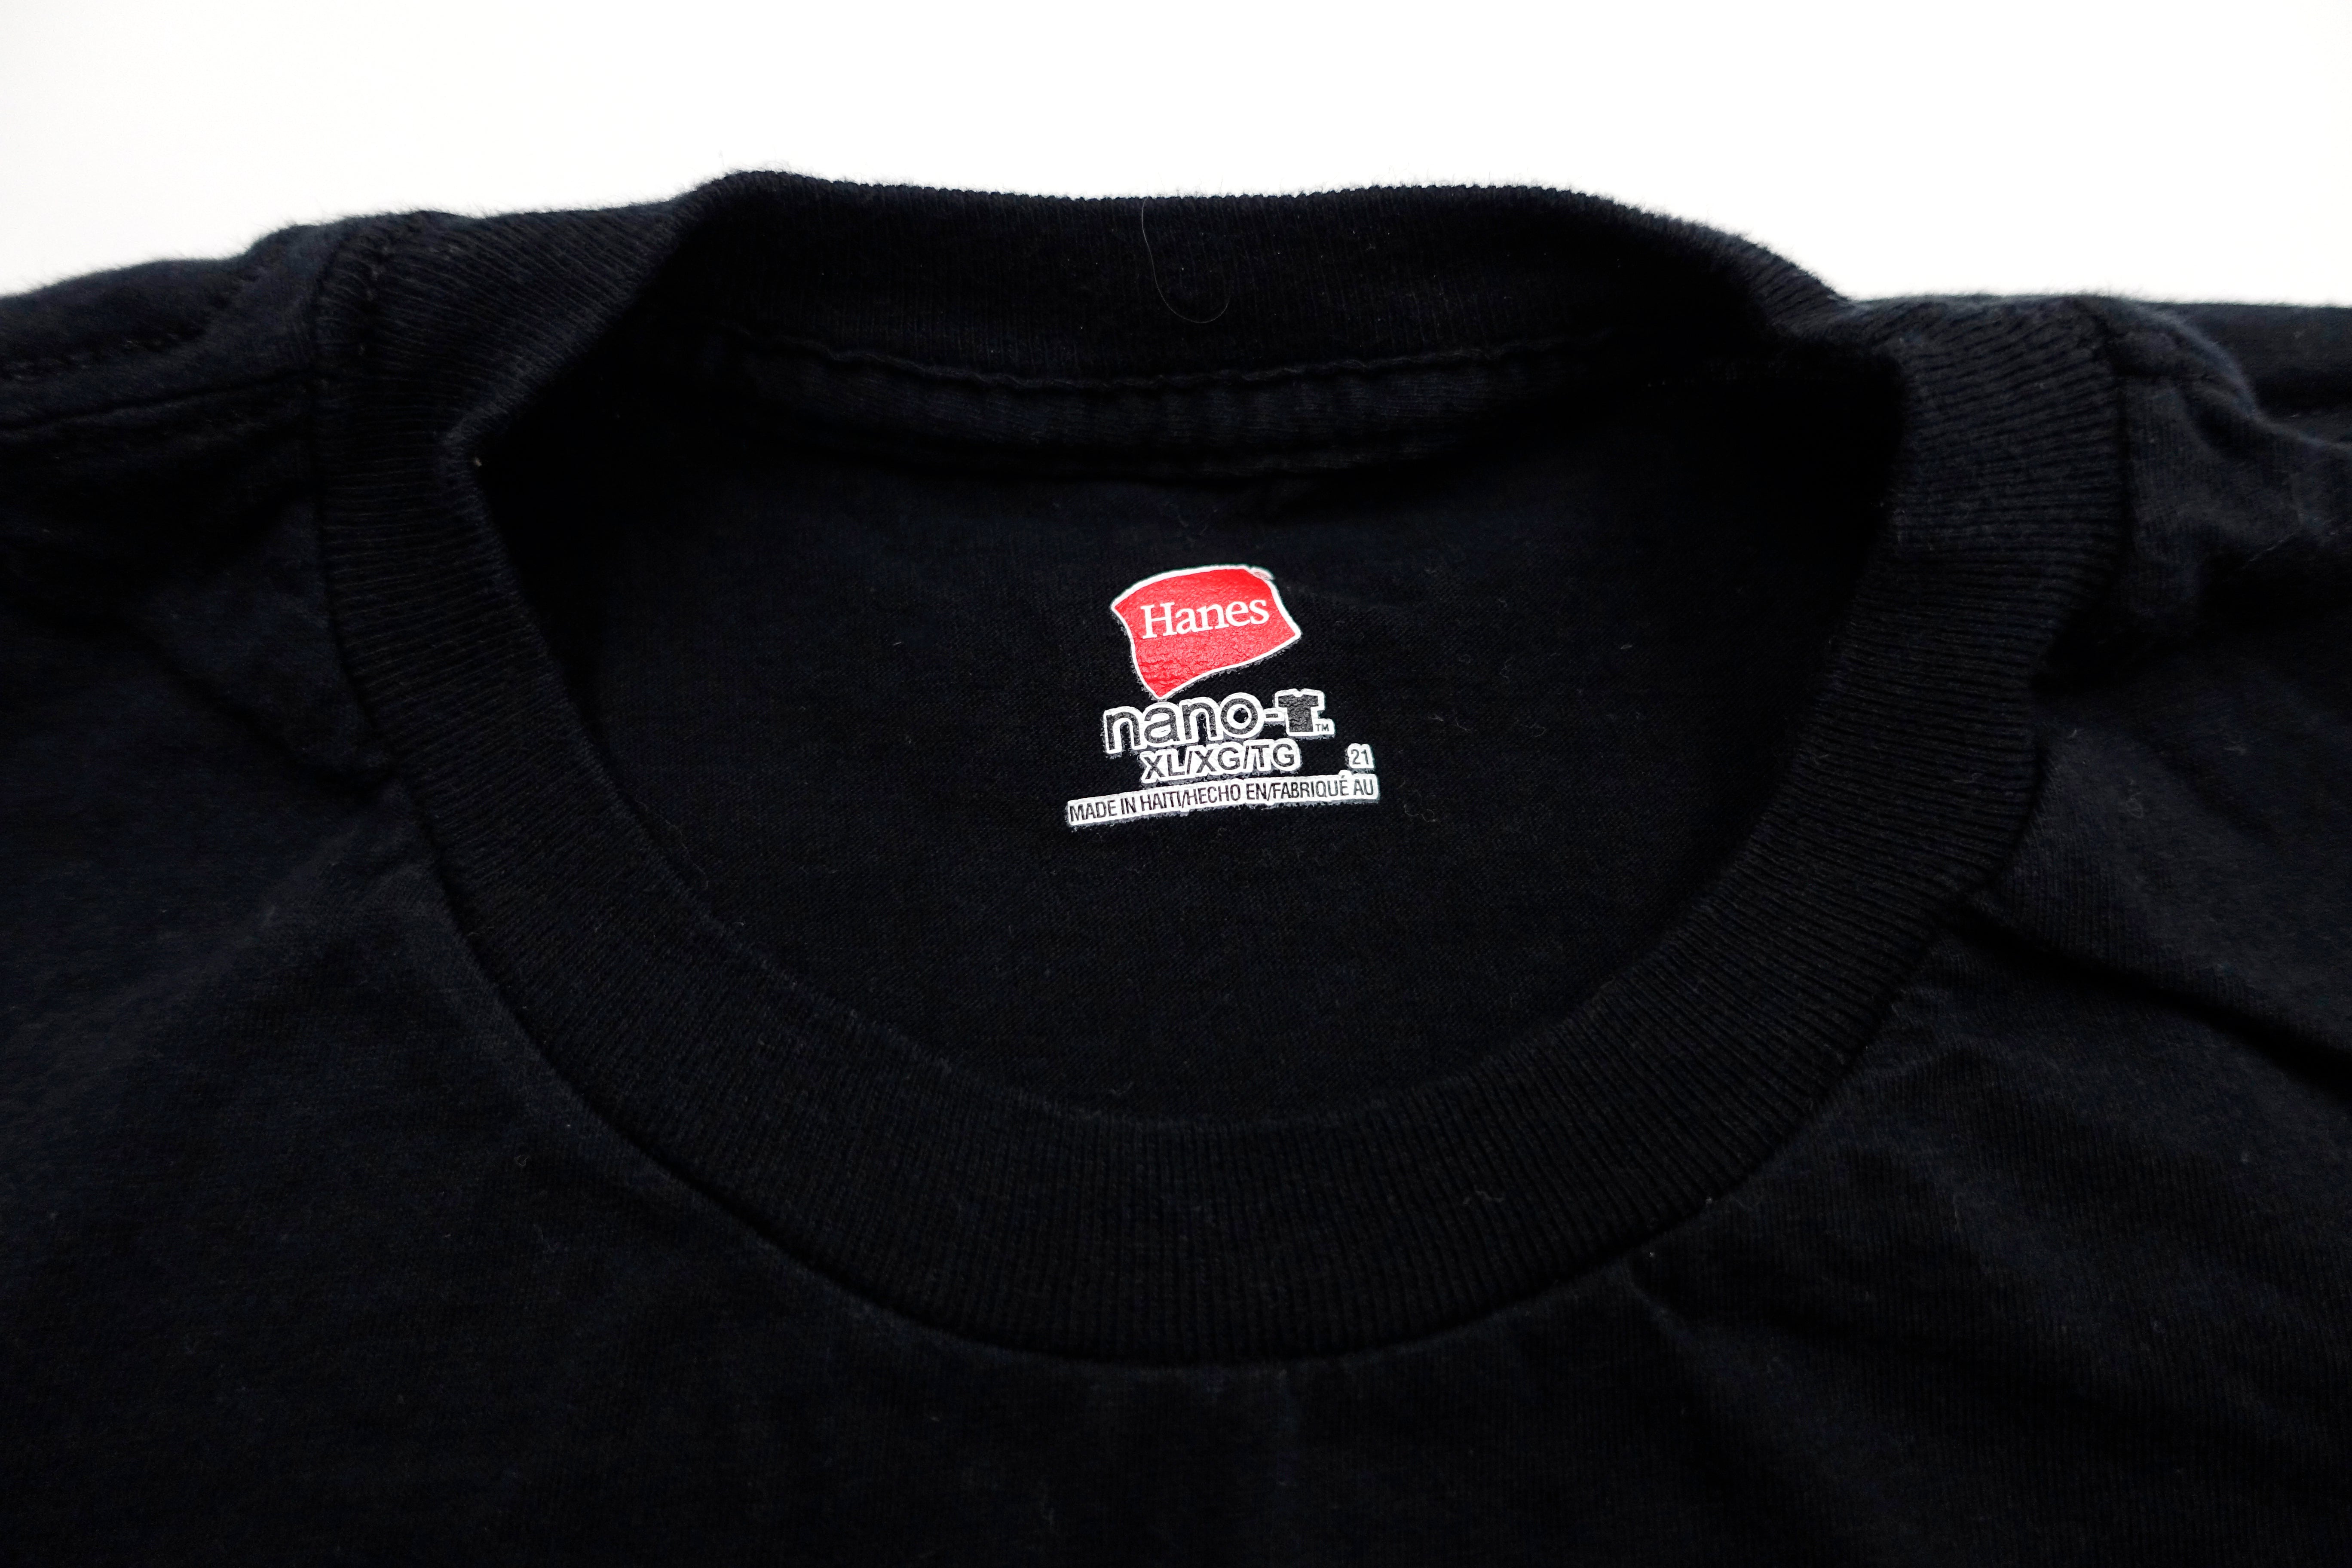 Bob Mould - Silver Age 2012 Tour Shirt Size XL